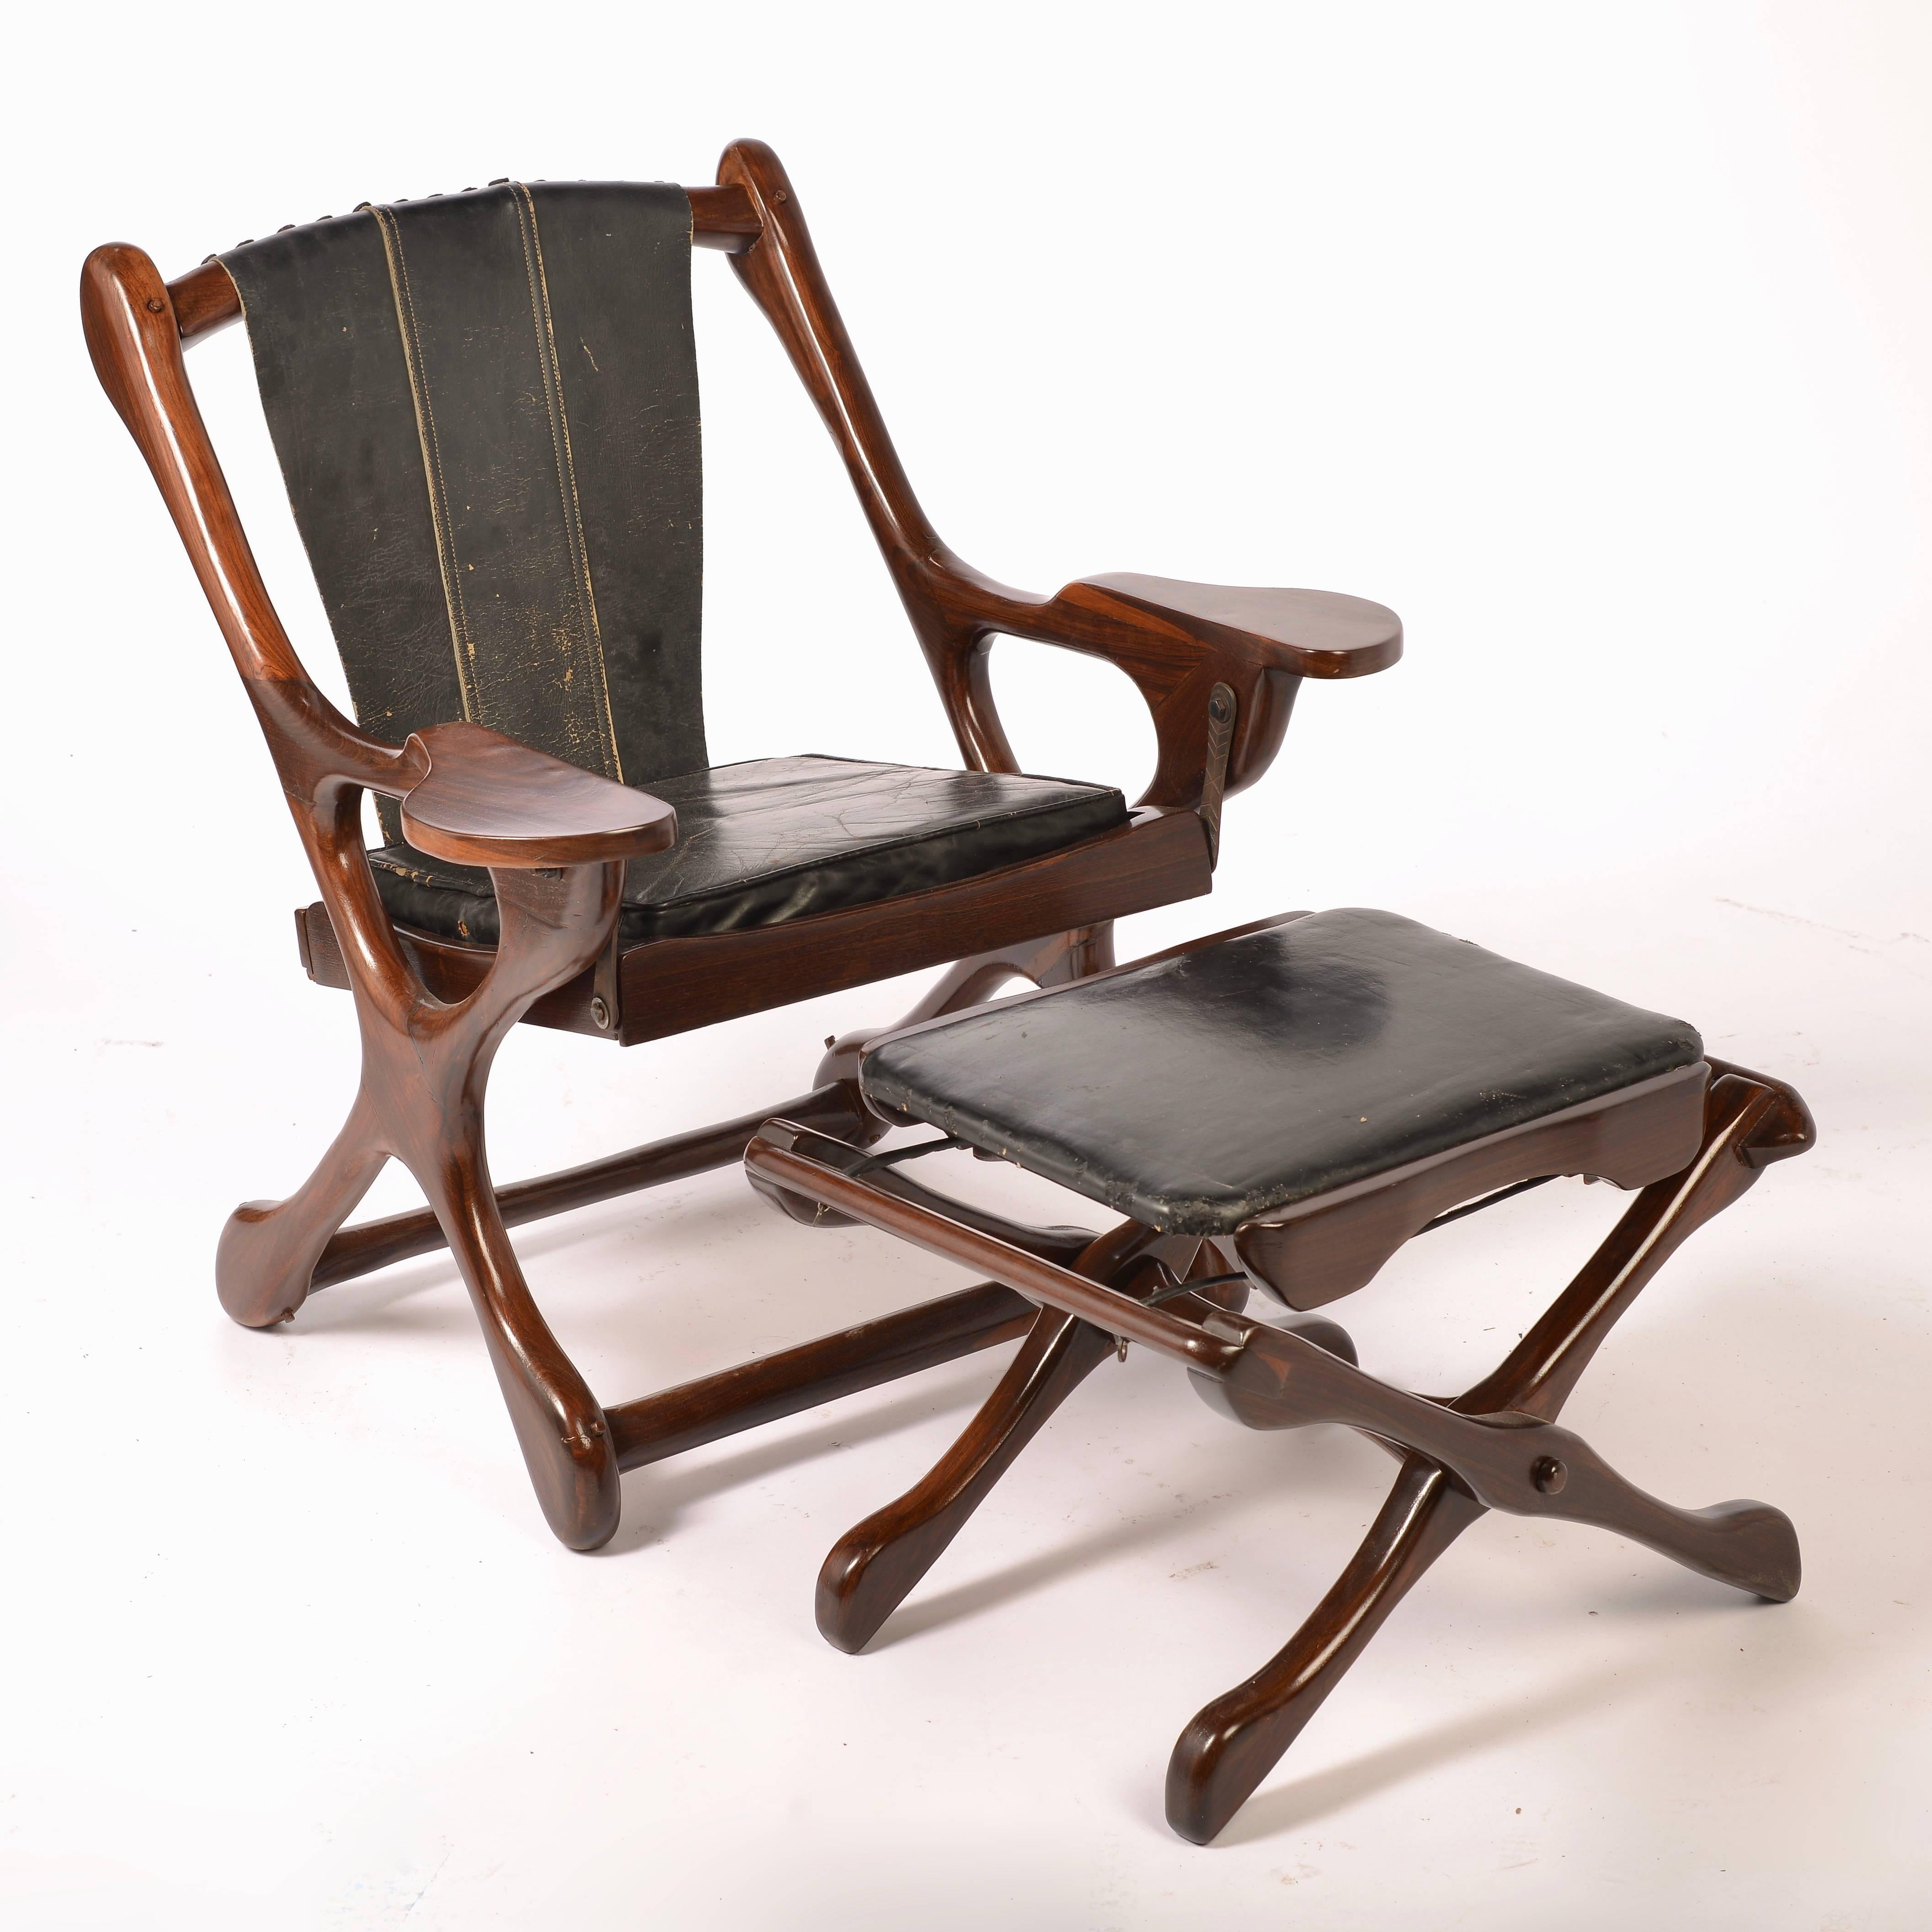 Un ensemble de chaise et d'ottoman Swinger de Don Shoemaker pour l'atelier emblématique Señal, S.A. du Mexique. Cette chaise a été rénovée et est en excellent état. Les fauteuils ont conservé leur cuir noir d'origine. Le pouf en cuir conserve